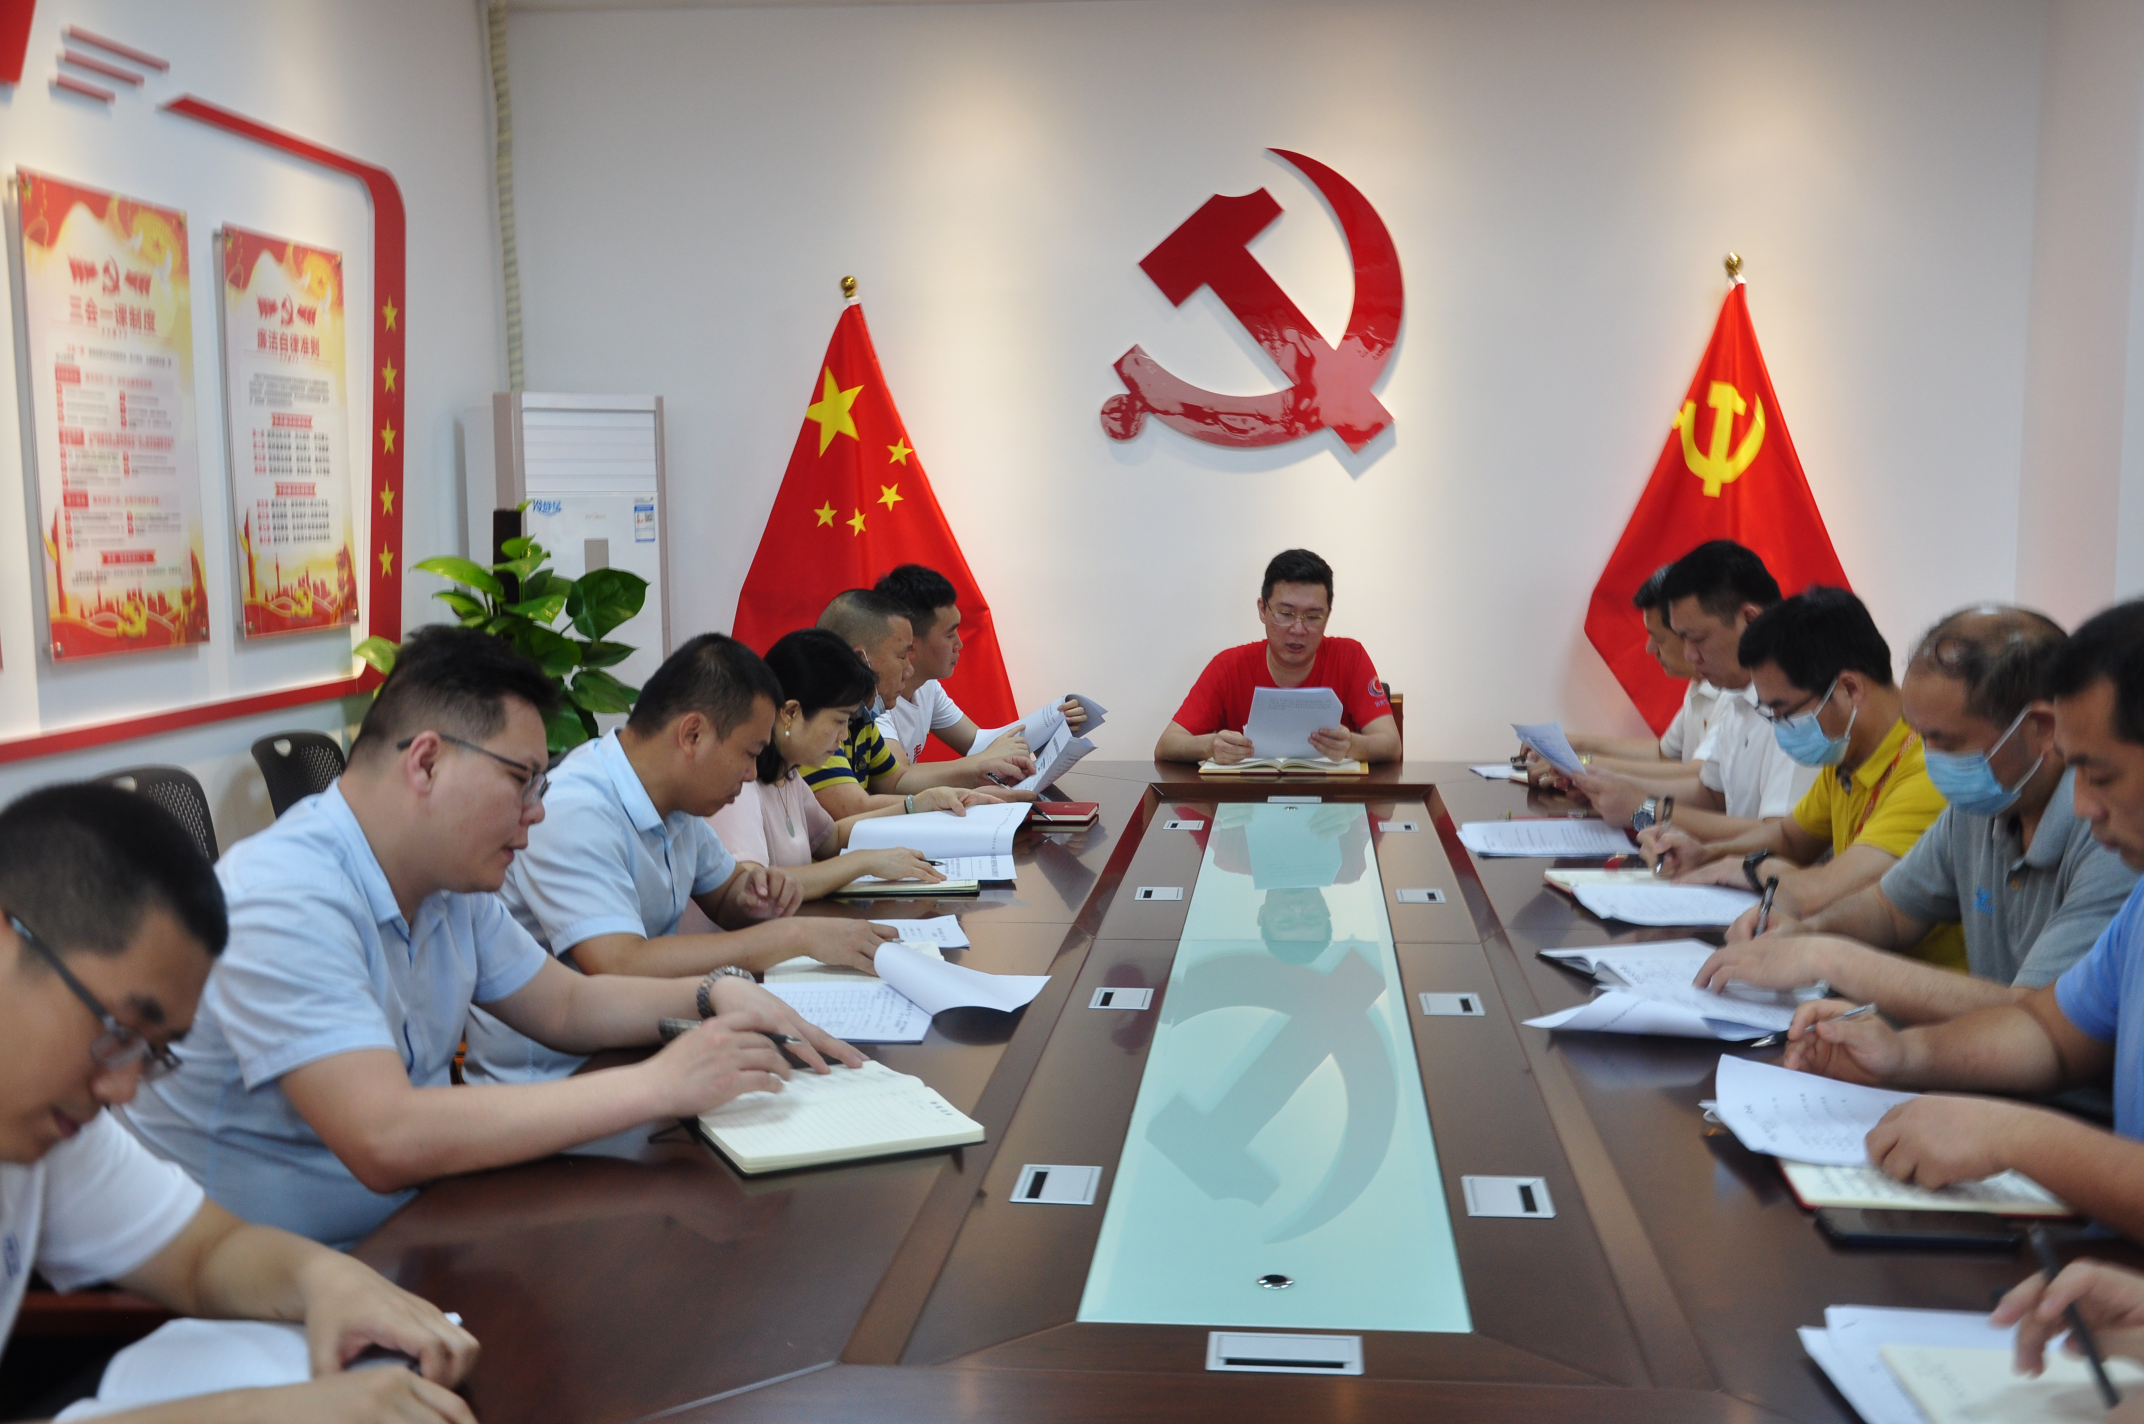 明珠广场党总支组织召开“五一”、端午节期间廉洁工作会议